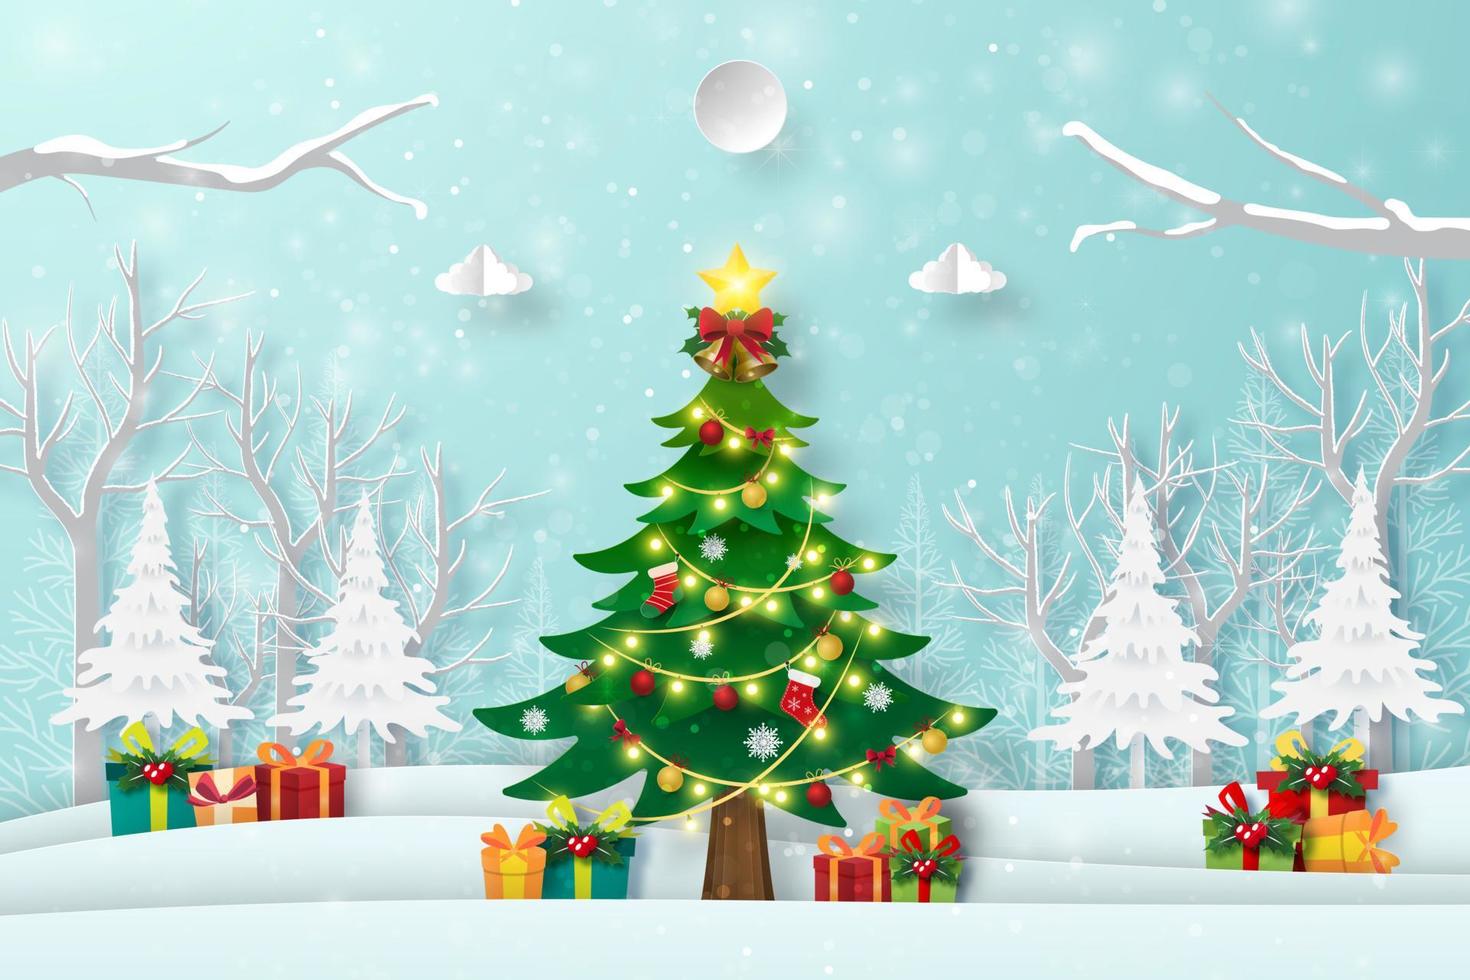 kerstboom in het bos met cadeautjes, vrolijk kerstfeest en gelukkig nieuwjaar vector